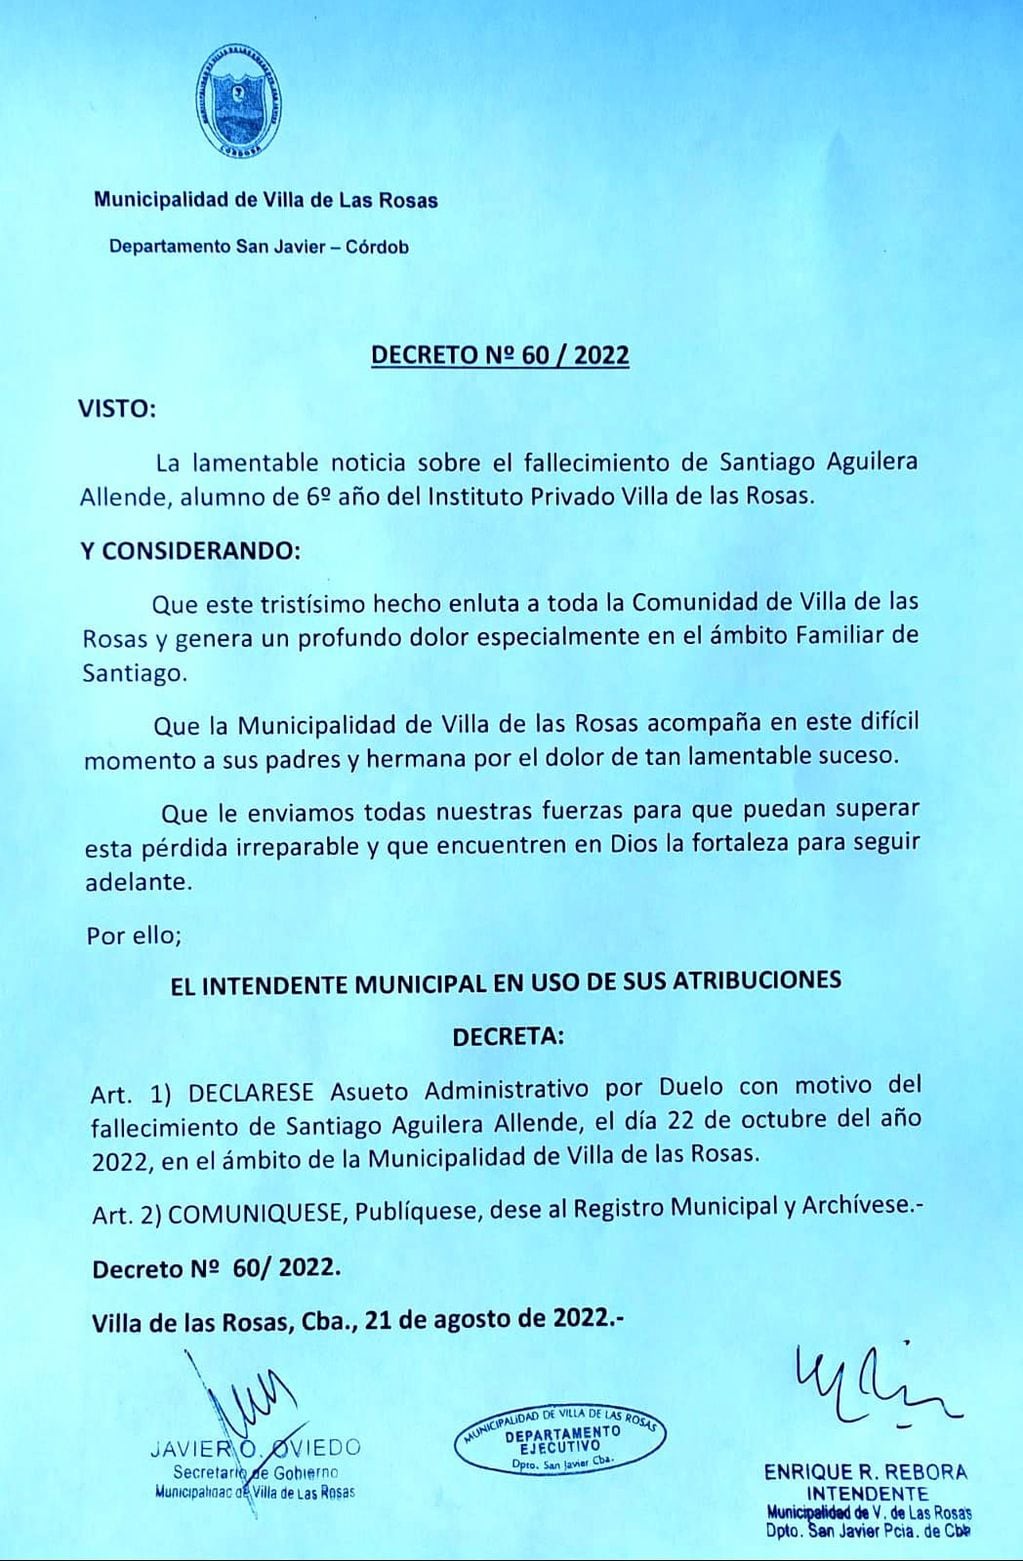 Declararon asueto administrativo tras la muerte de Santiago.